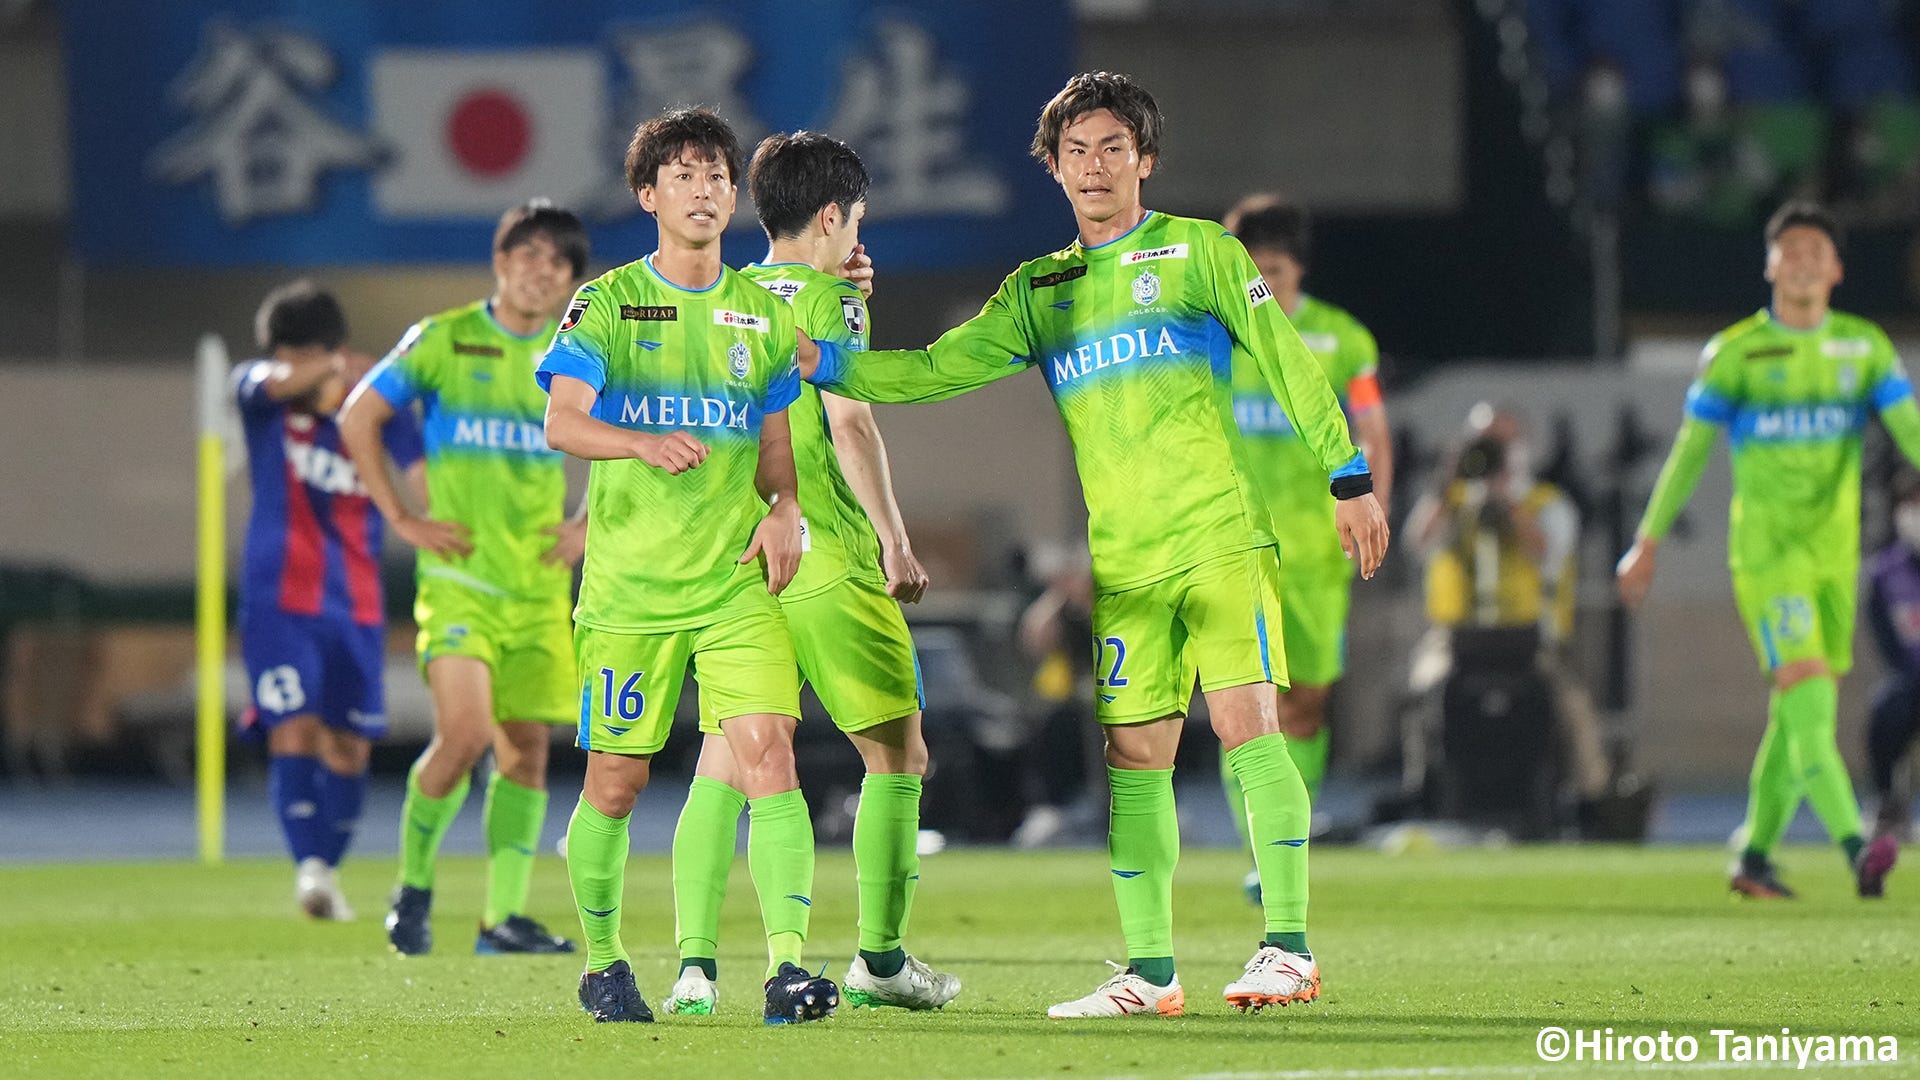 結果一覧 鹿島アントラーズがセレッソ大阪に勝利 ルヴァン杯第4節 Goal Com 日本